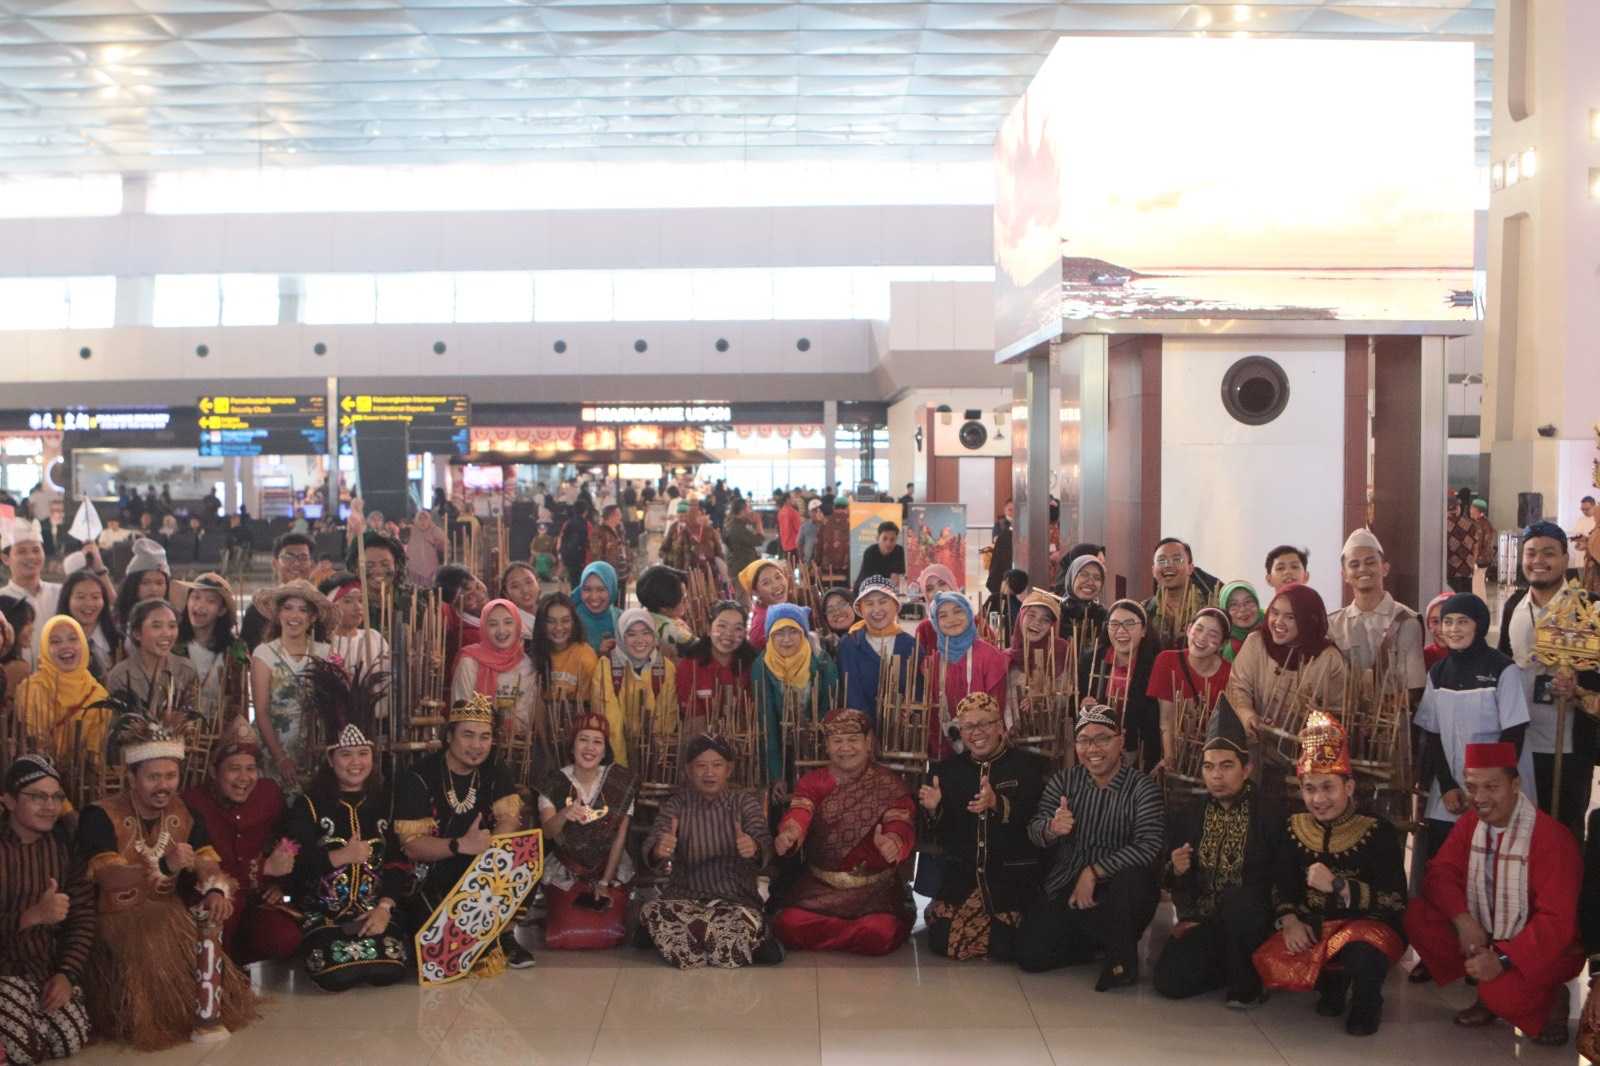 Meriahkan HUT, Bandara Soetta Gelar Flashmob Angklung